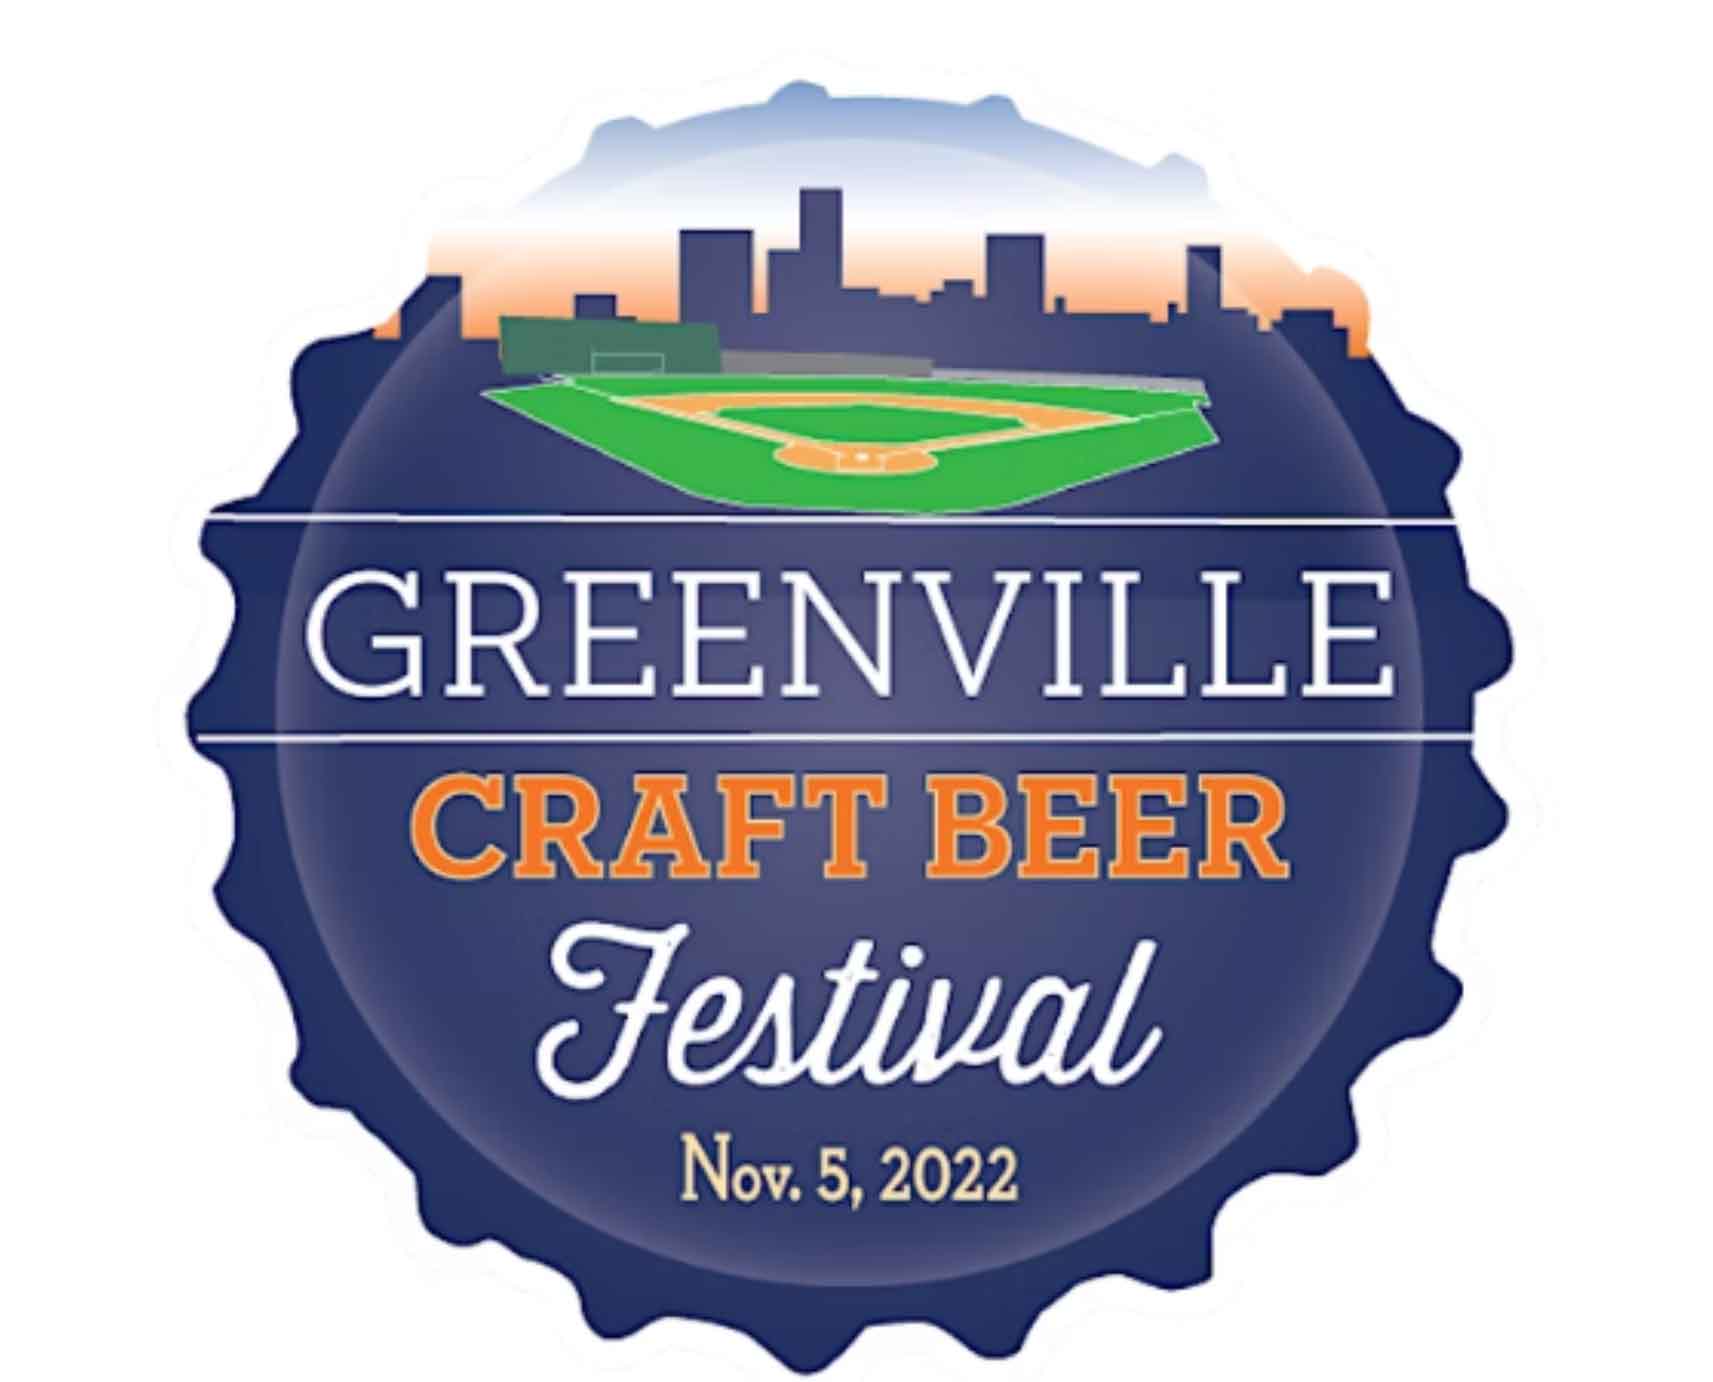 Greenville Craft Beer Festival